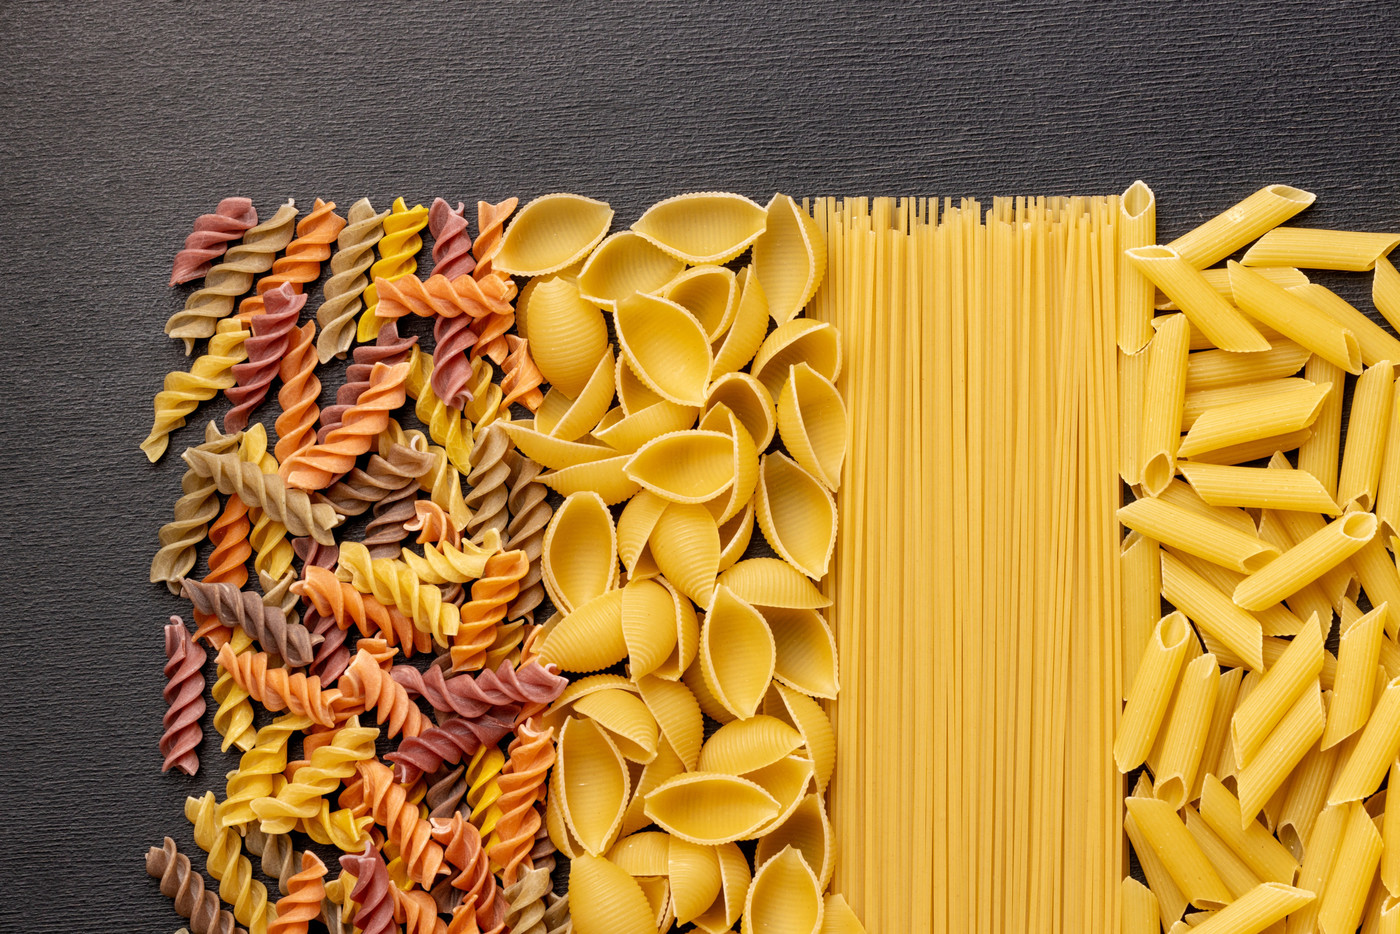 Trockene Pasta: Wenn ihr die Packung der Teigwaren öffnet, solltet ihr die Teigwaren anschliessend luftdicht verpacken. 